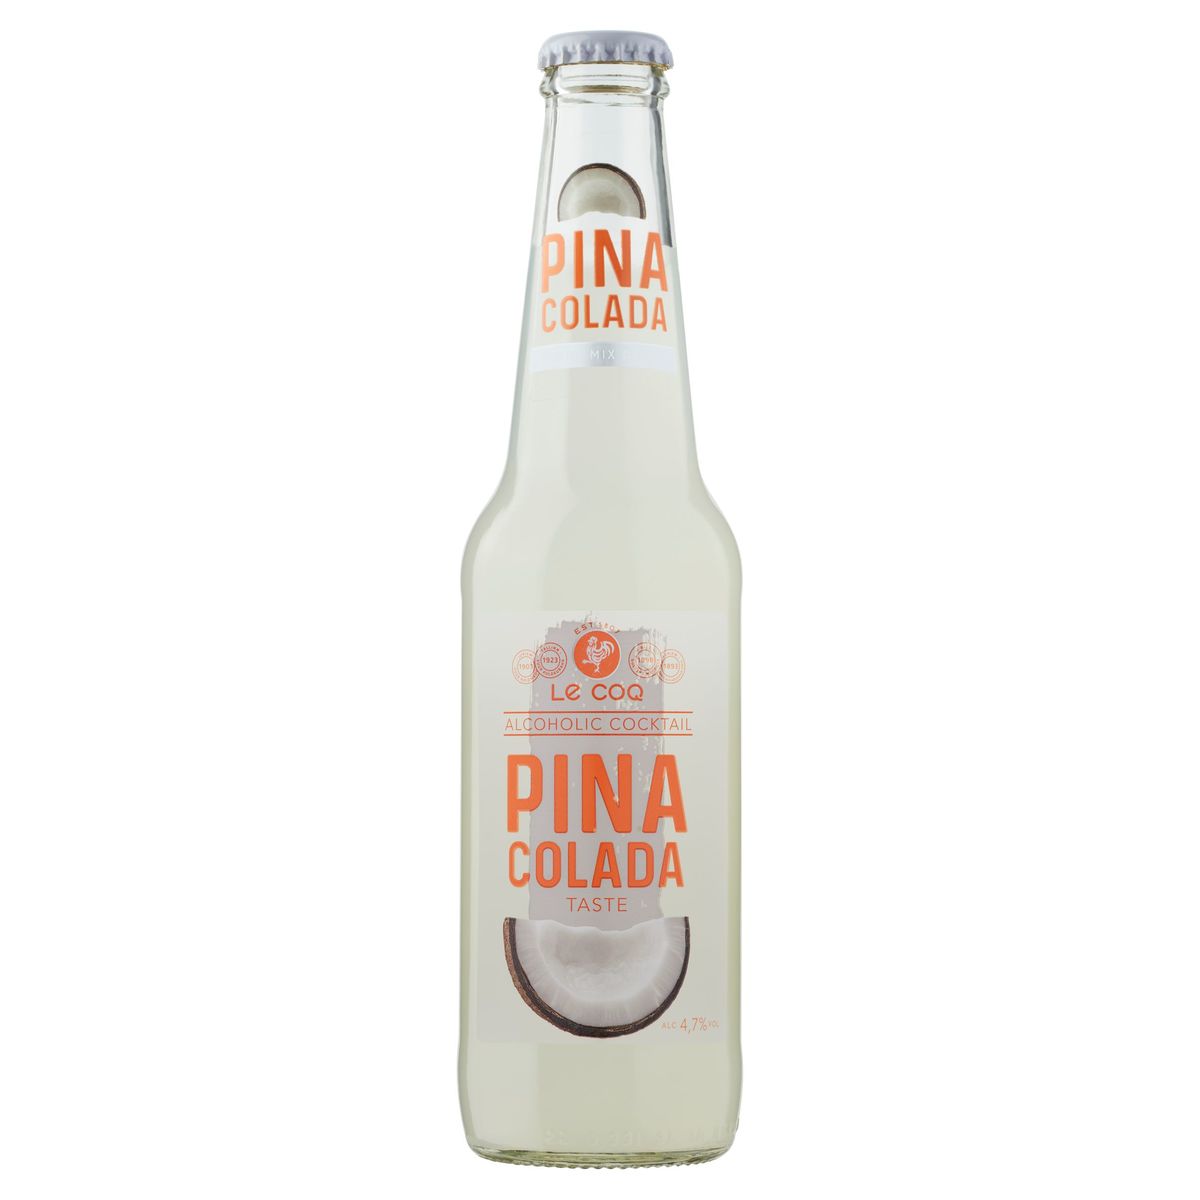 Le Coq Alcoholic Cocktail Pina Colada Taste 330 ml